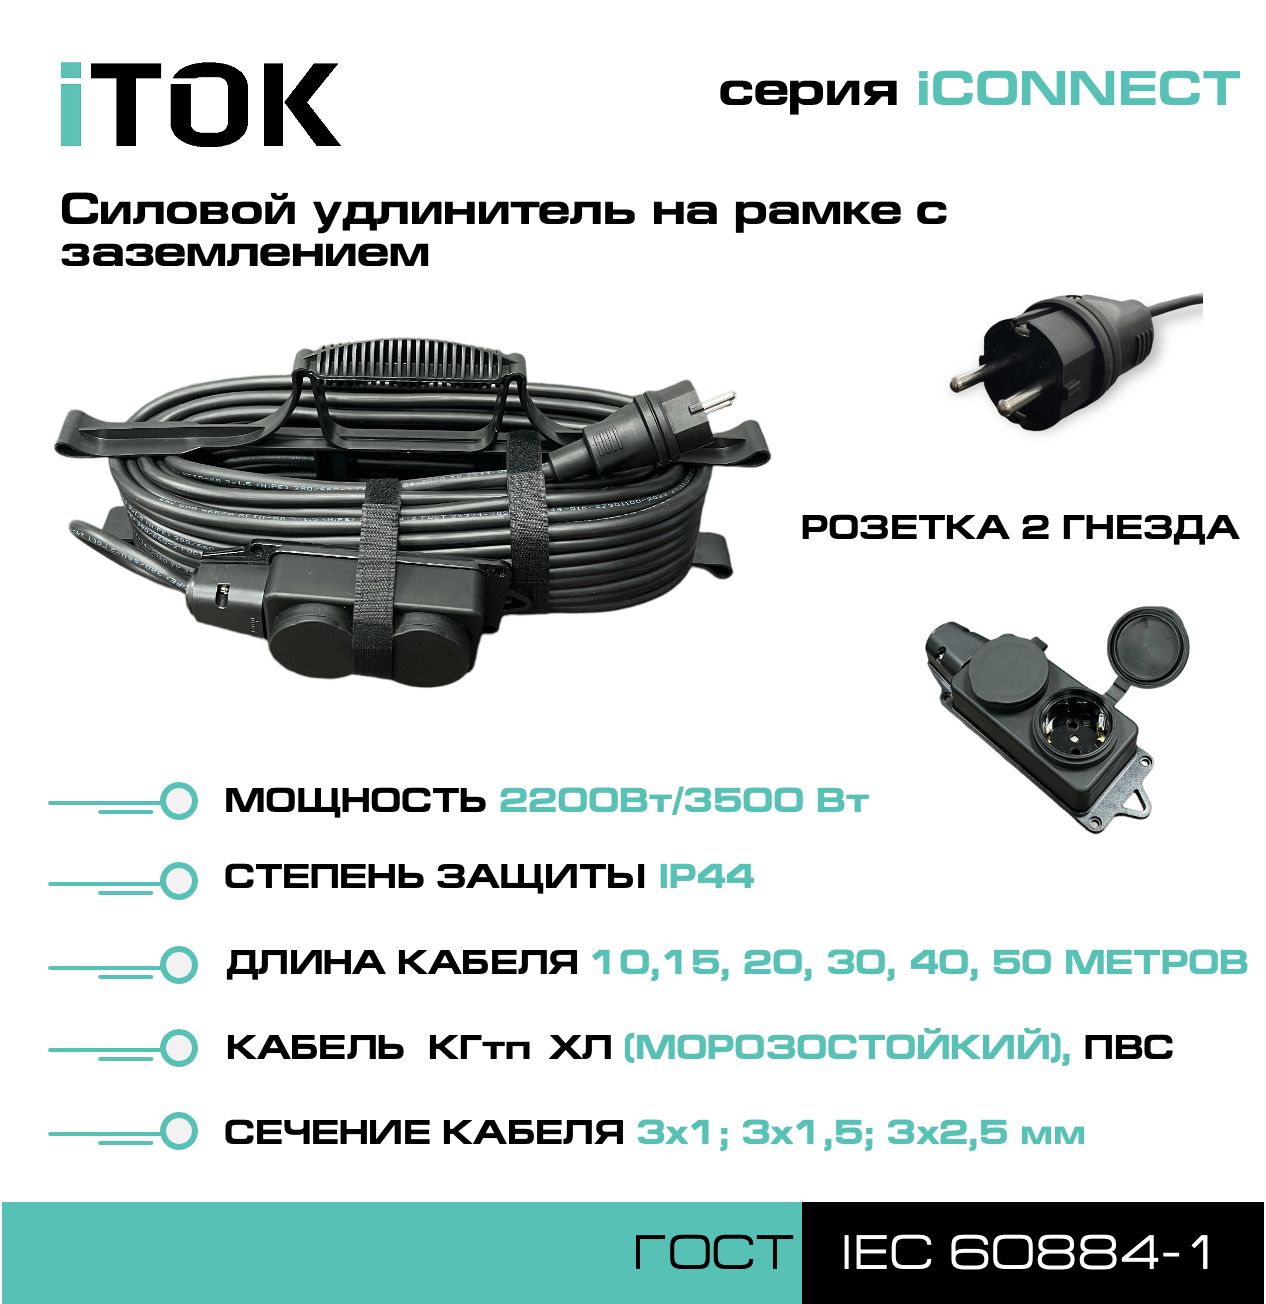 Удлинитель на рамке с заземлением серии iTOK iCONNECT КГтп-ХЛ 3х1,5 мм 2 гнезда IP44 10 м